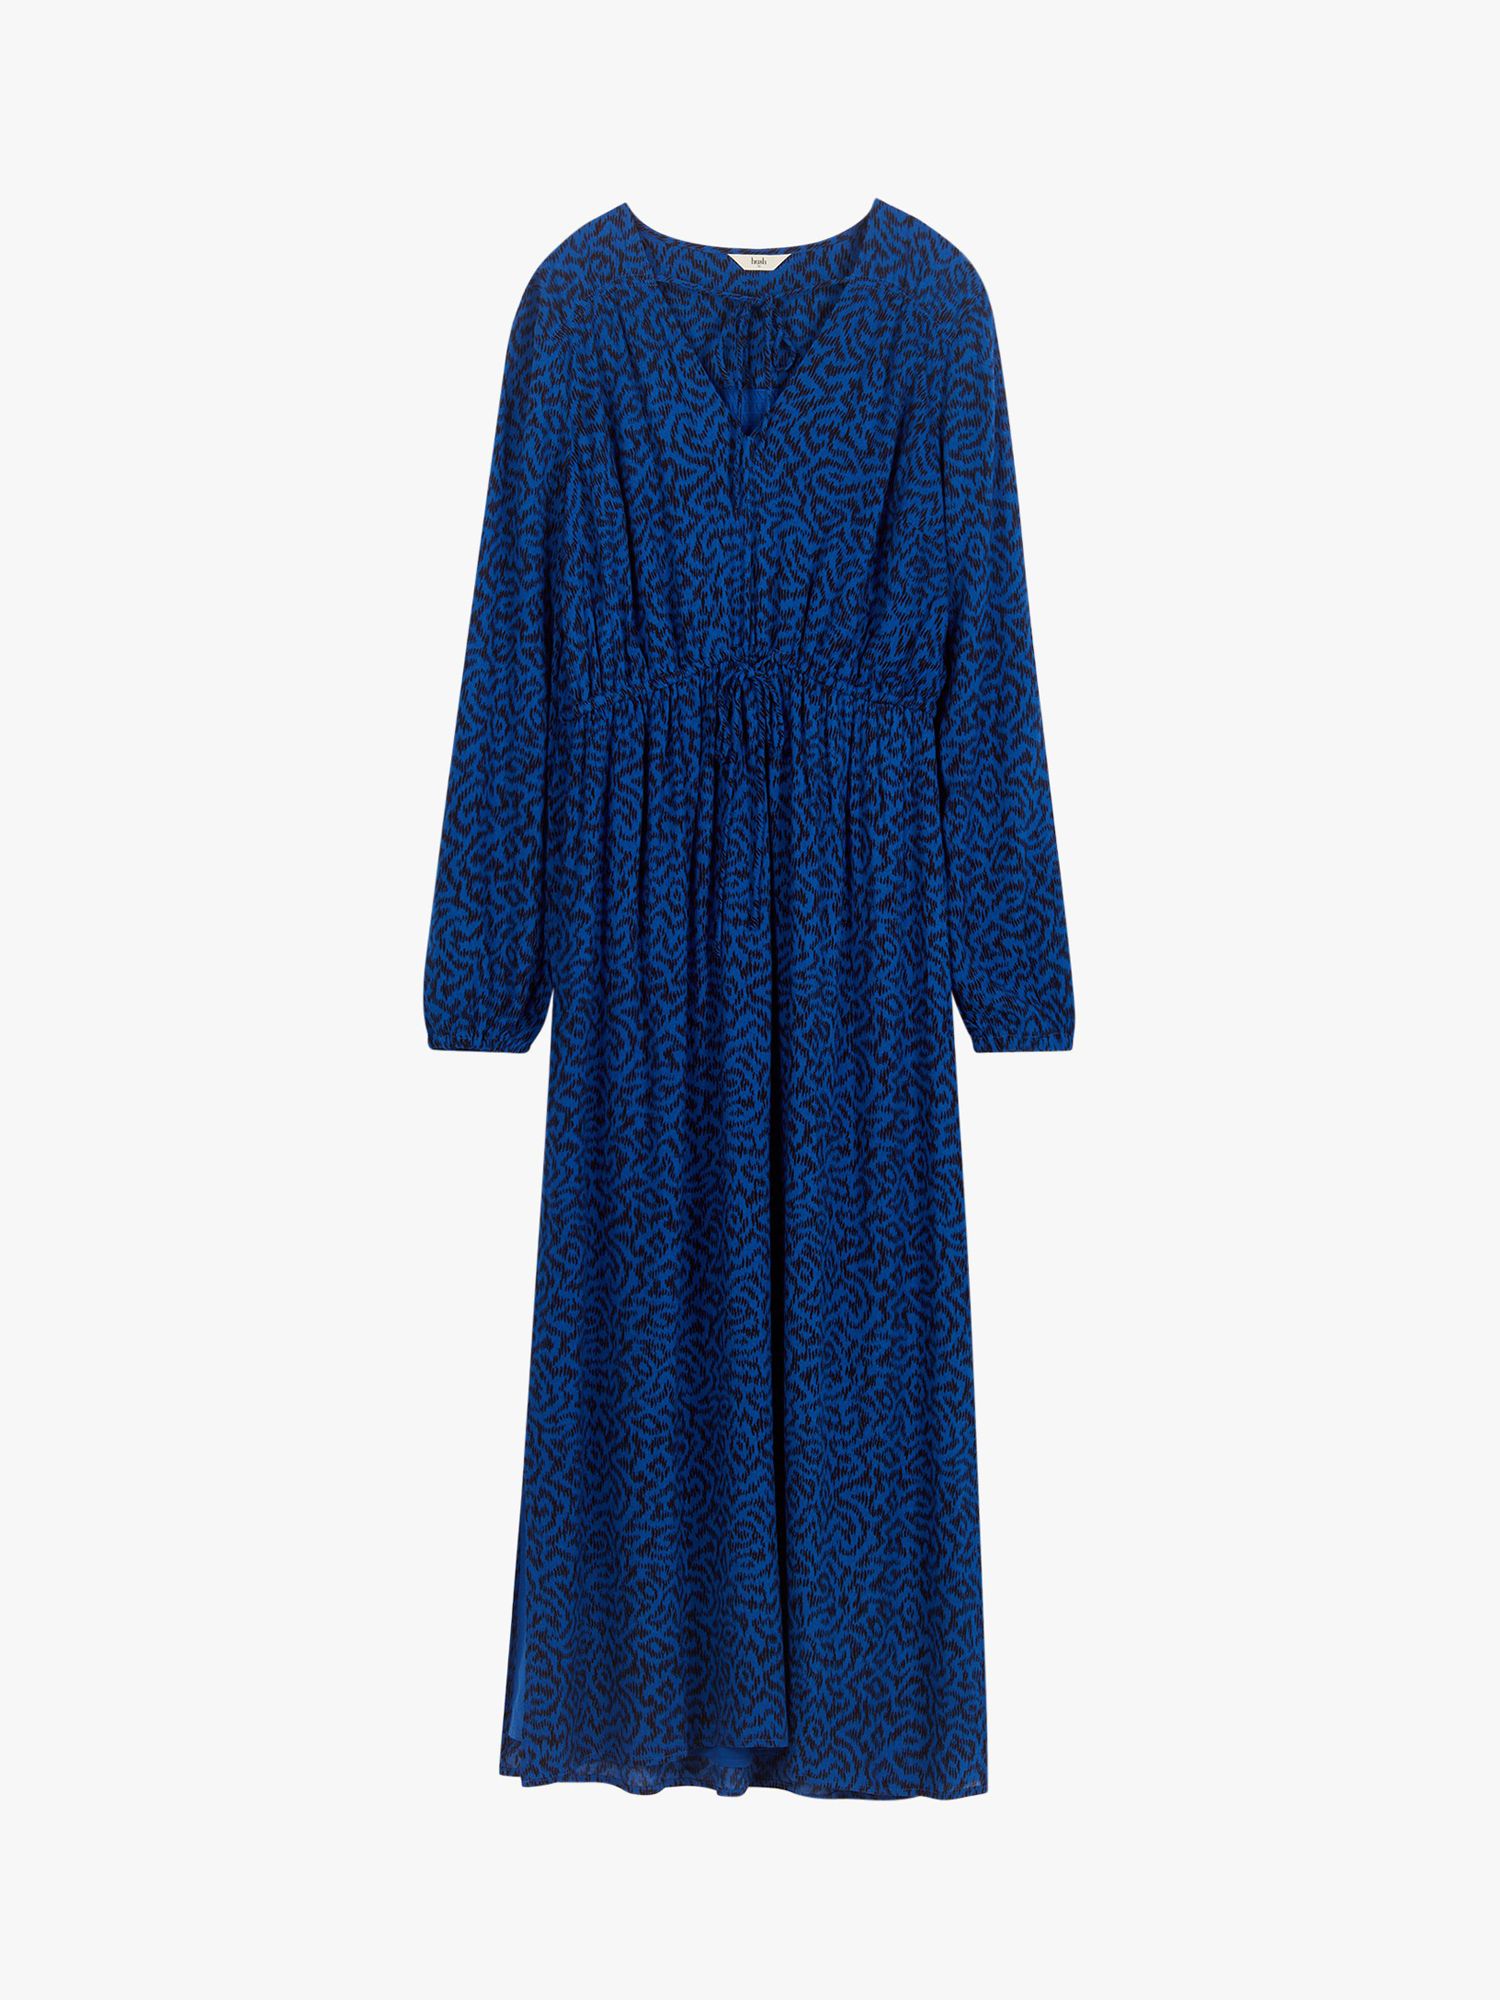 hush Kirsty Midi Dress, Blue/Black at John Lewis & Partners